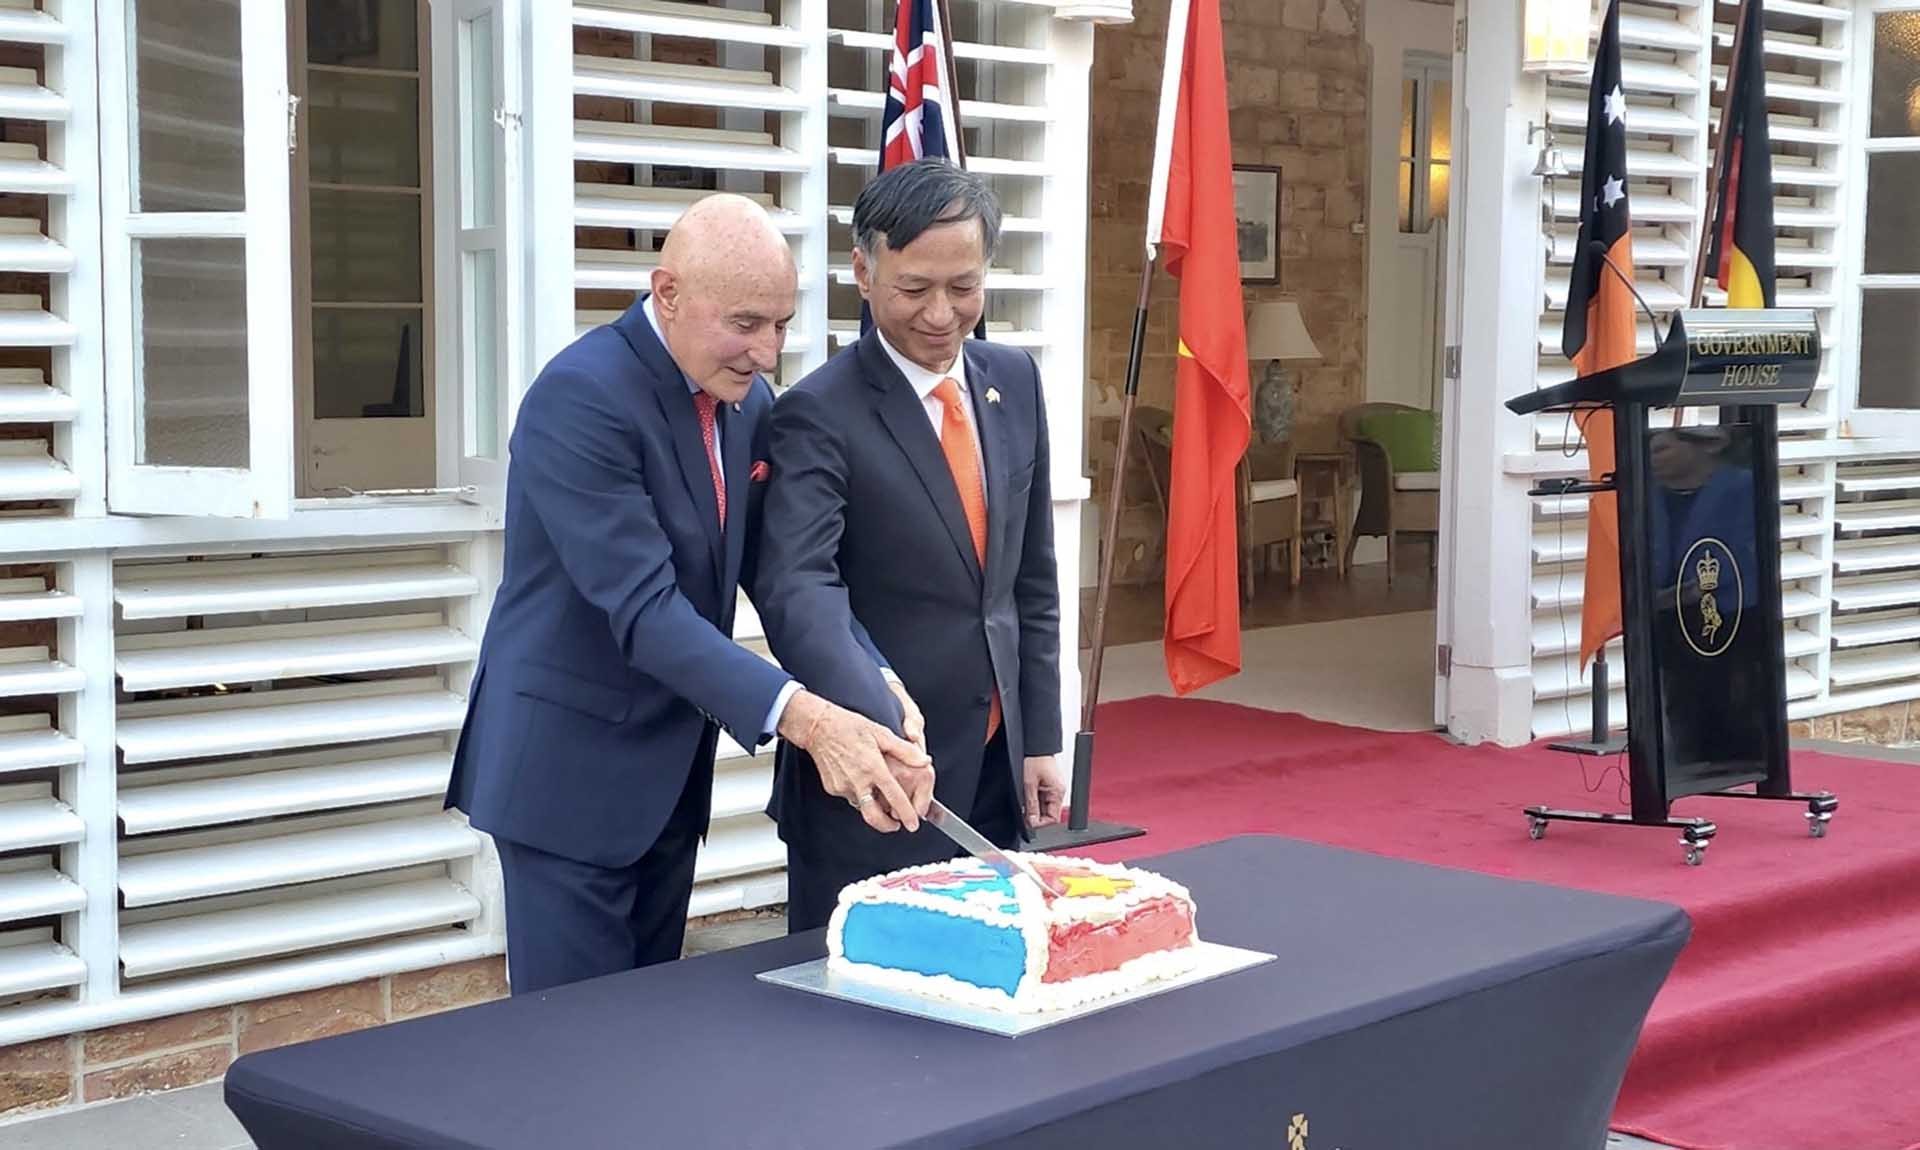 Thống đốc và Đại sứ thực hiện nghi lễ cắt bánh tại lễ kỷ niệm.